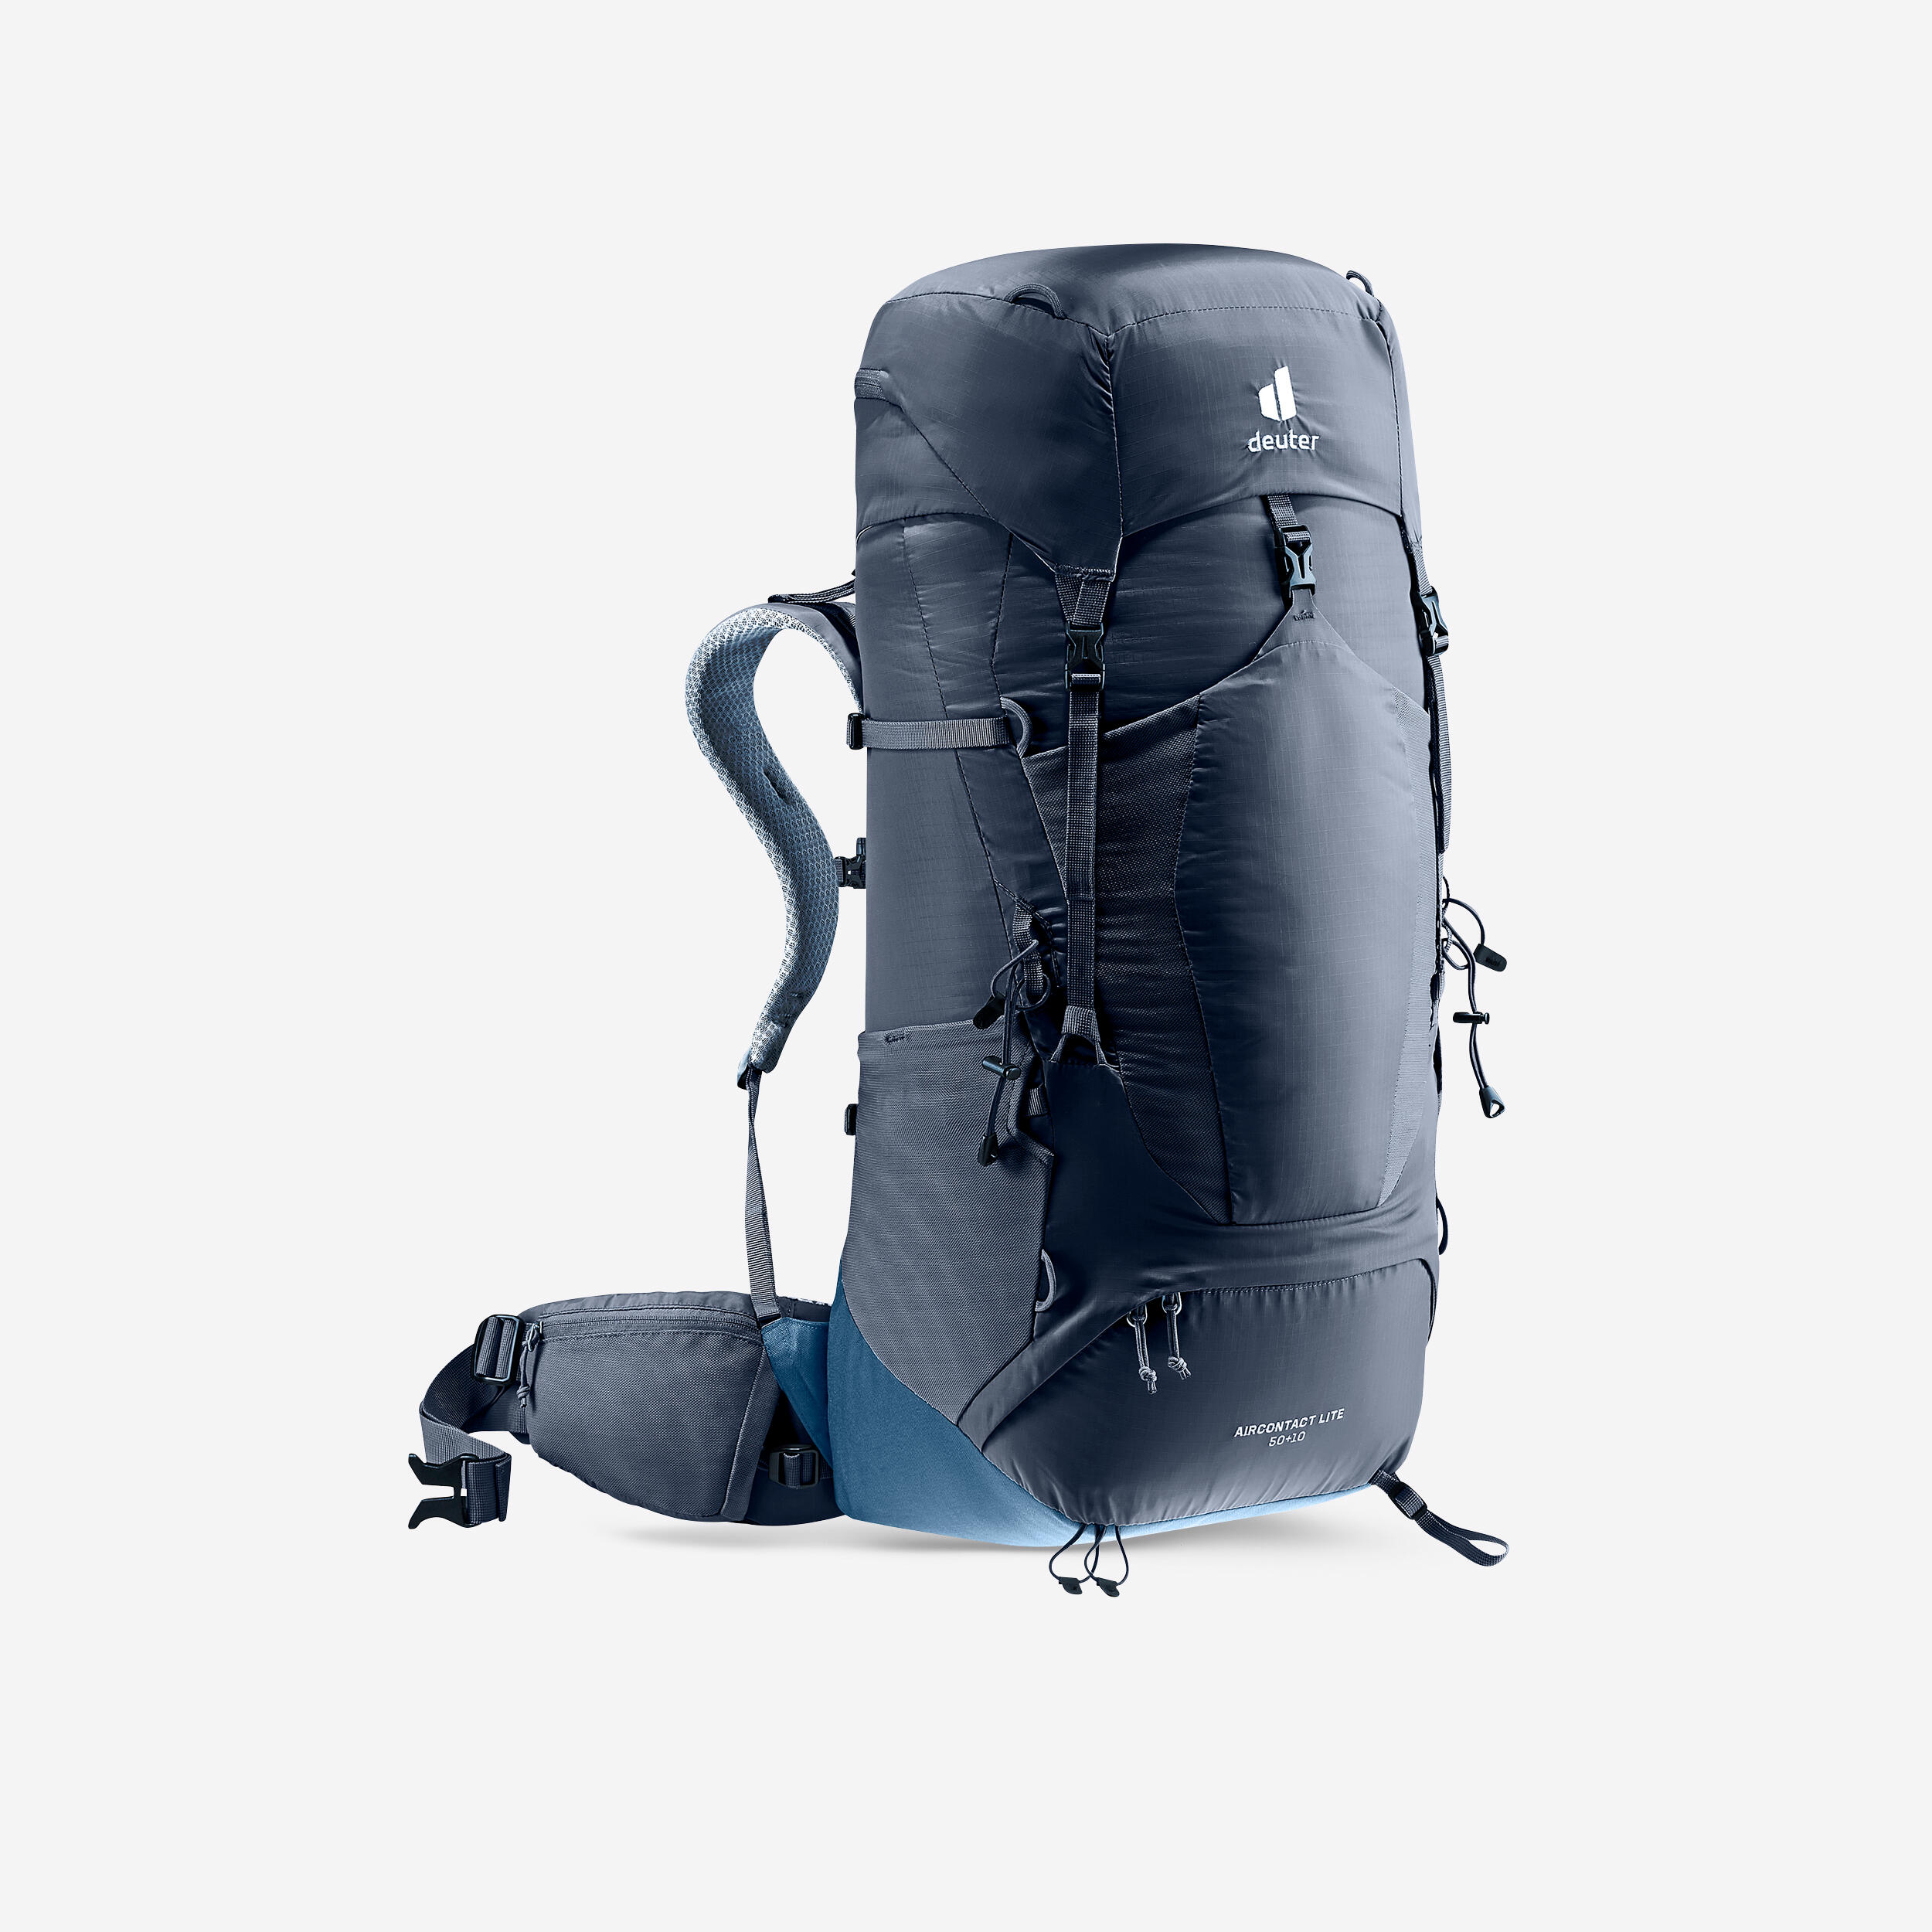 DEUTER Trekking Backpack 50+10L - DEUTER AIR CONTACT LITE